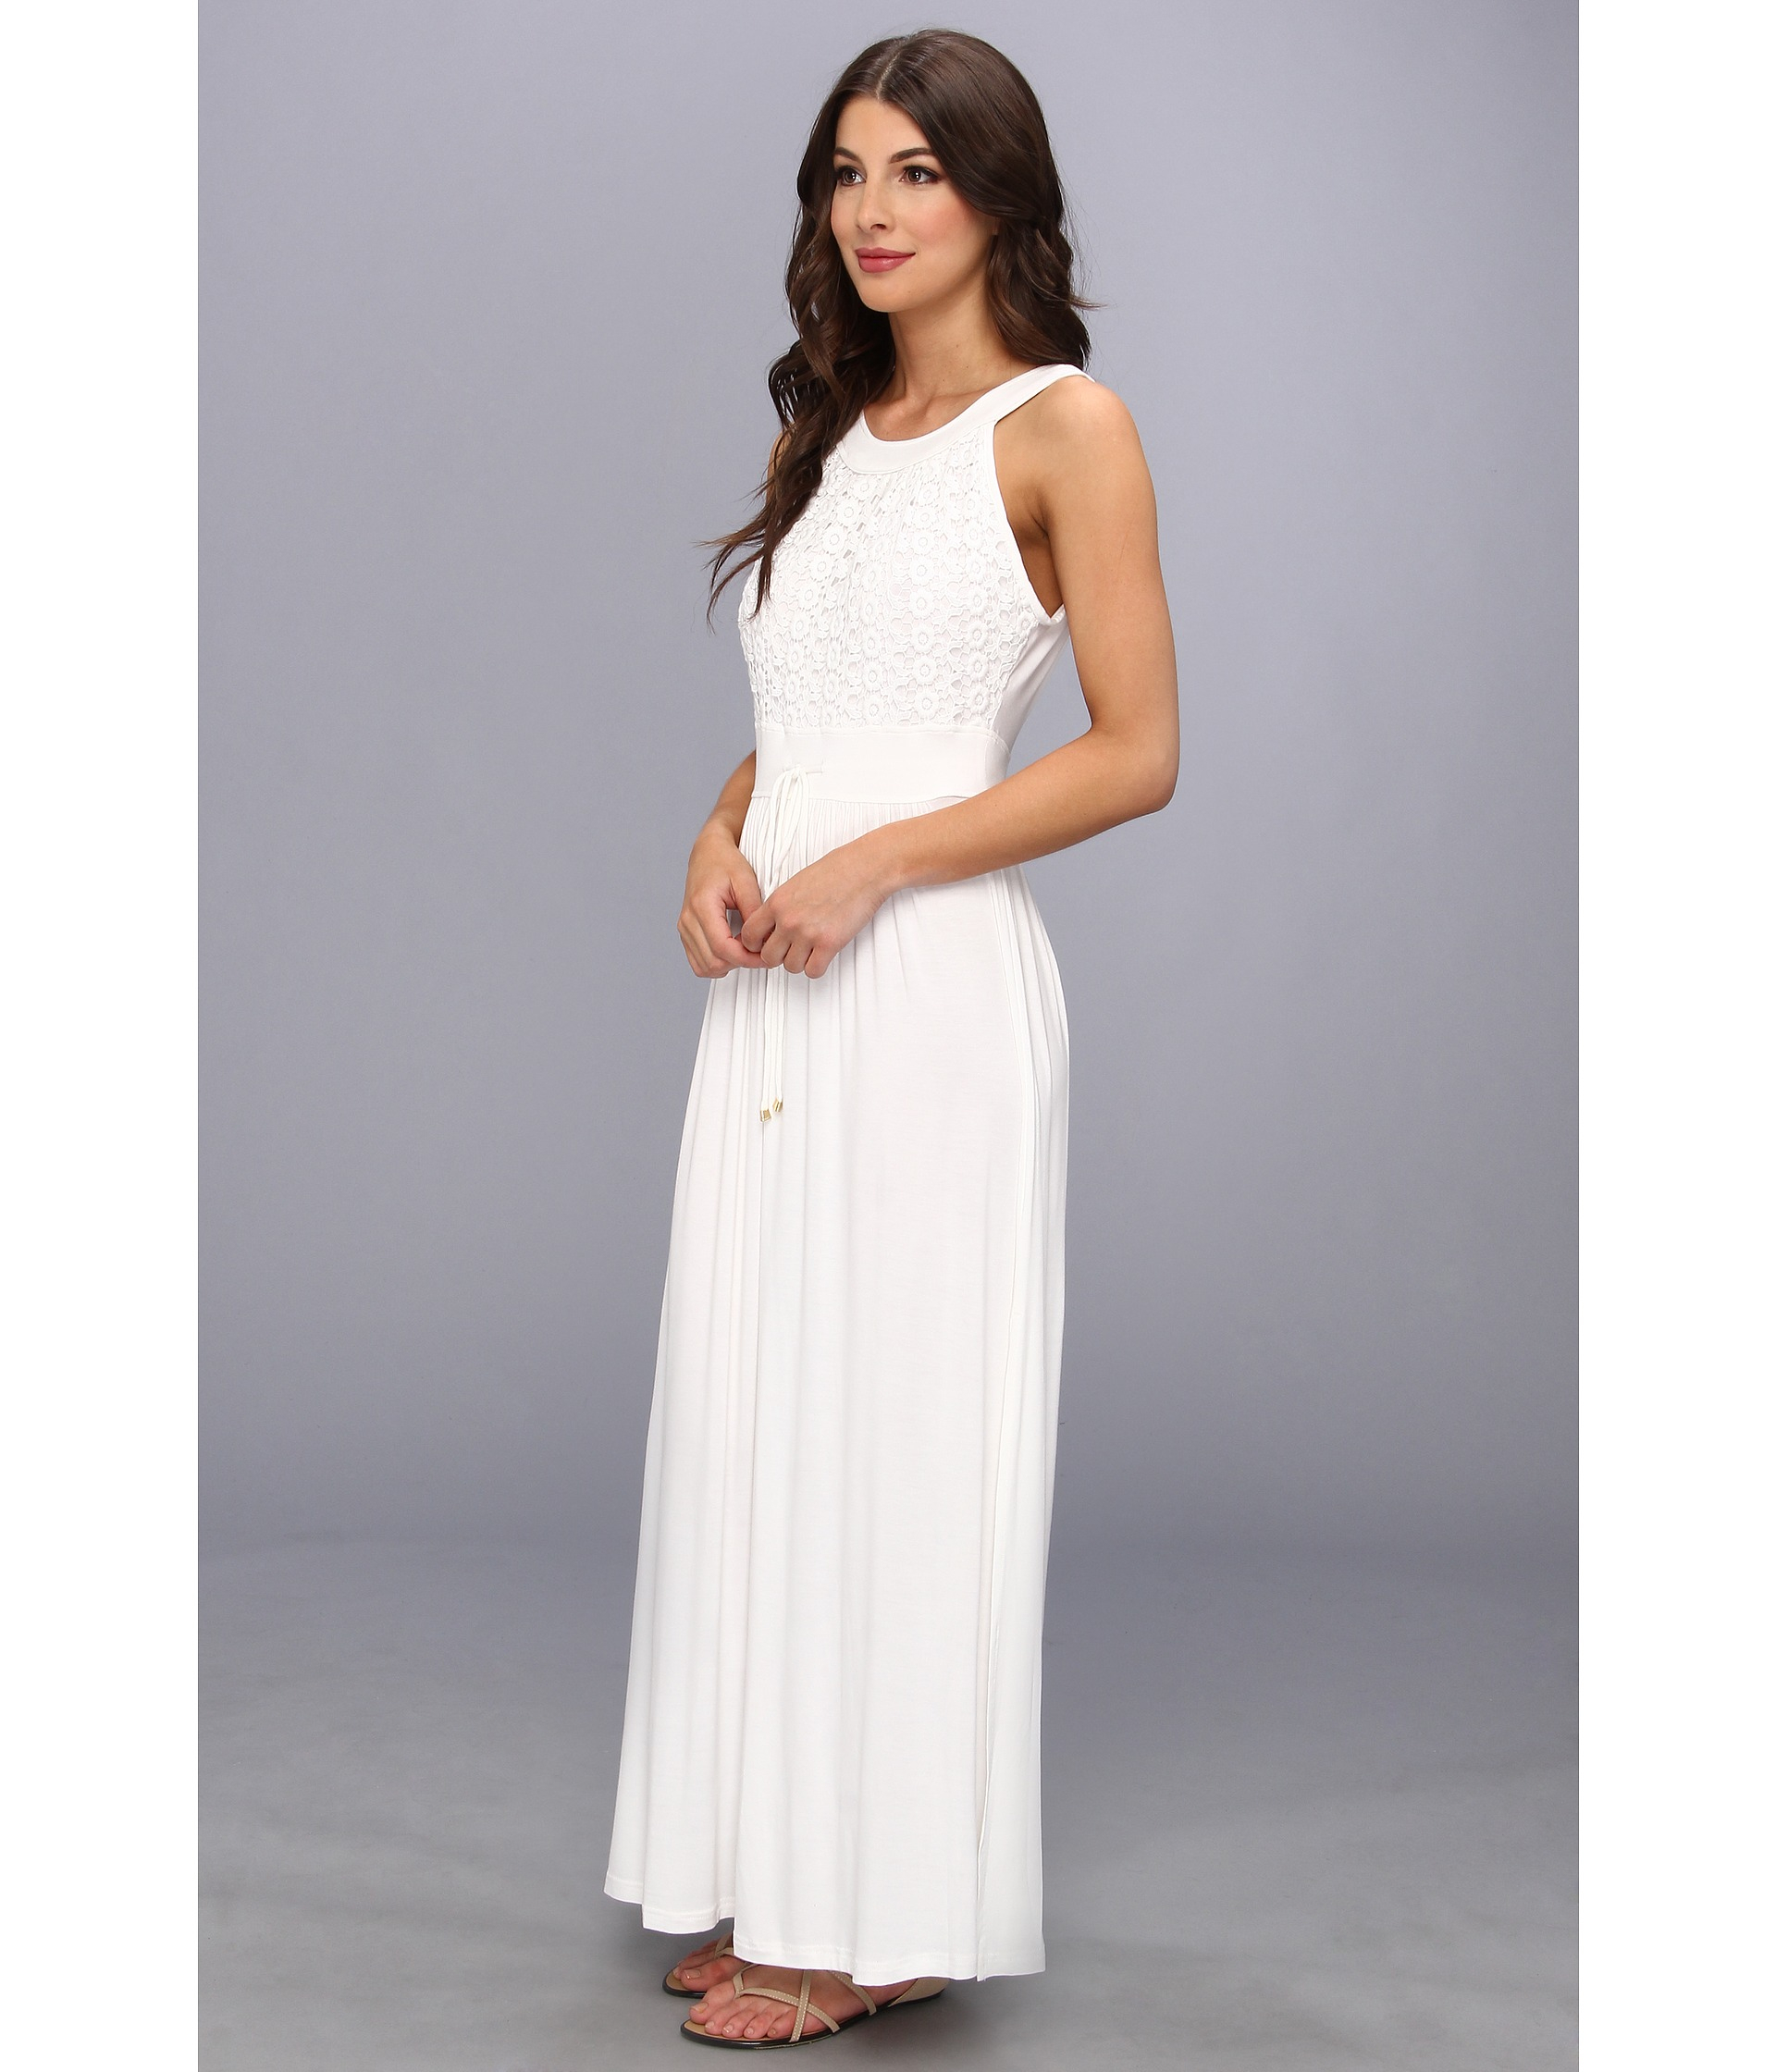 white rayon dress